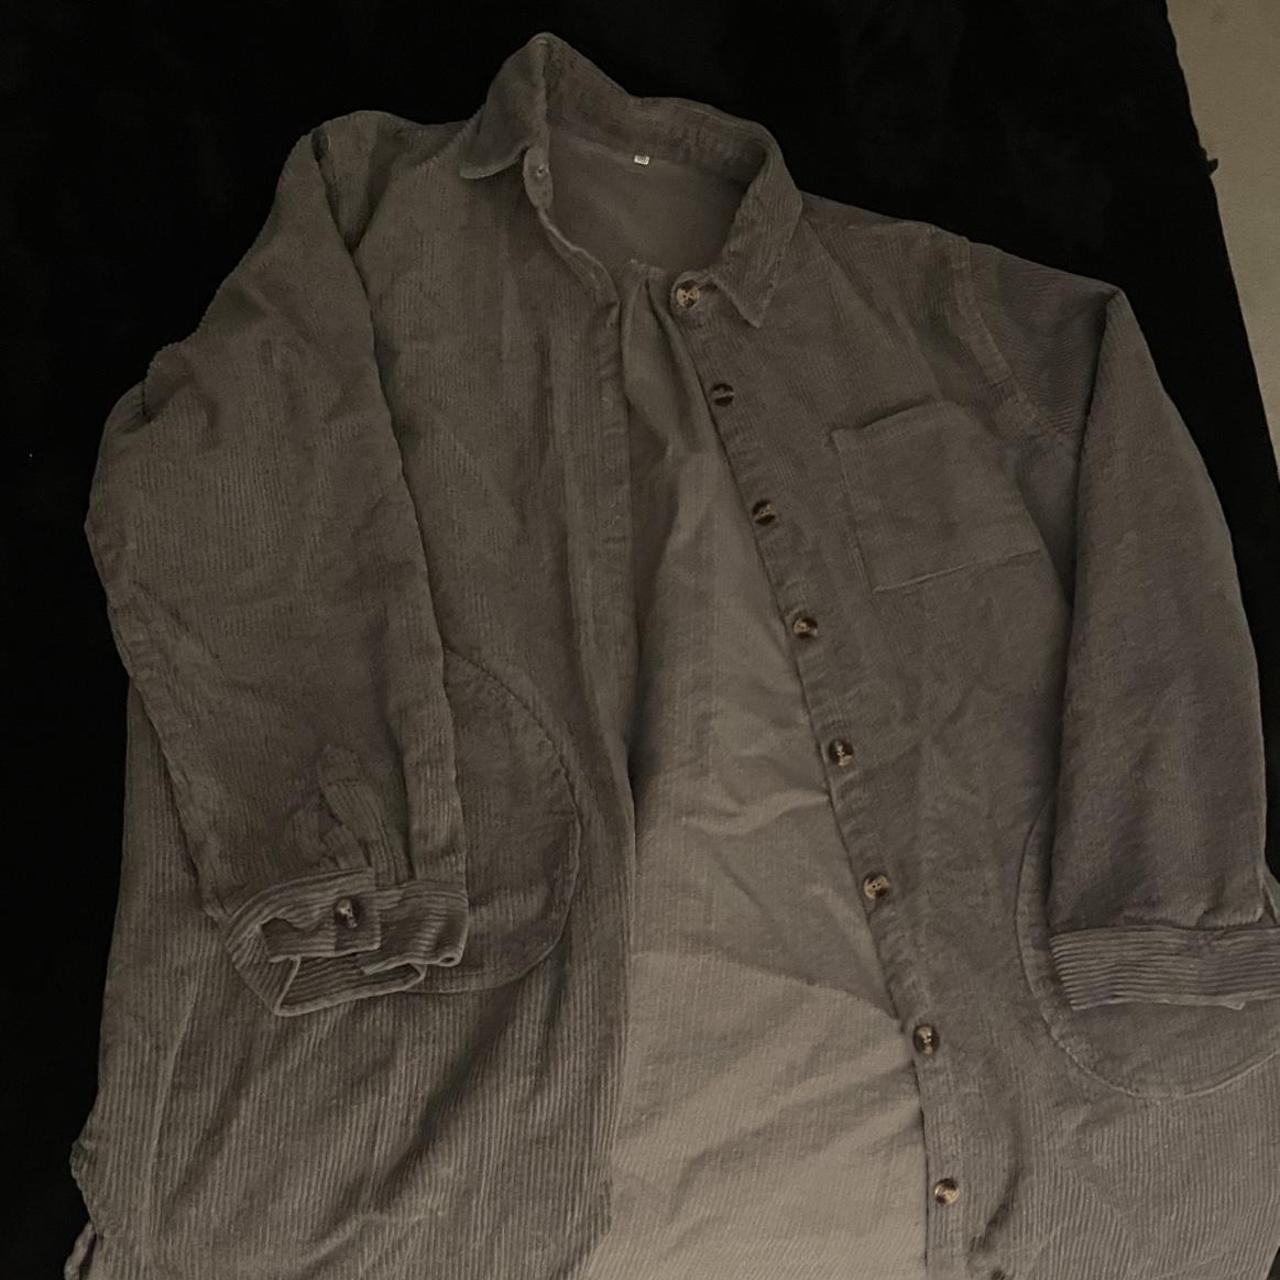 Gray corduroy trench coat, cool 70s look - Depop